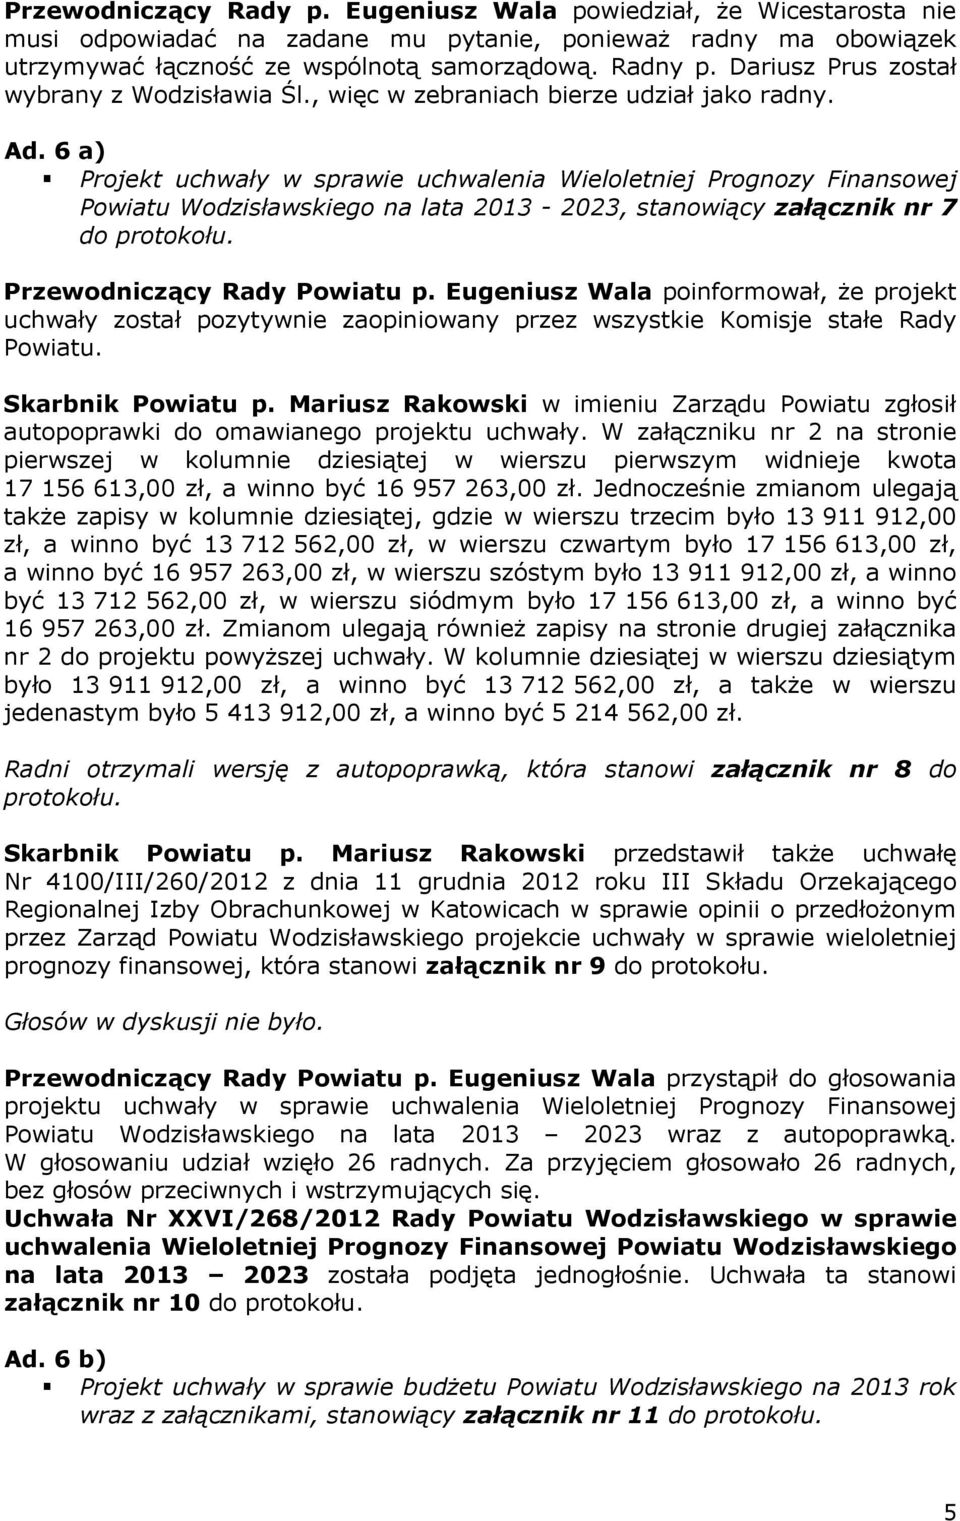 6 a) Projekt uchwały w sprawie uchwalenia Wieloletniej Prognozy Finansowej Powiatu Wodzisławskiego na lata 2013-2023, stanowiący załącznik nr 7 do protokołu.